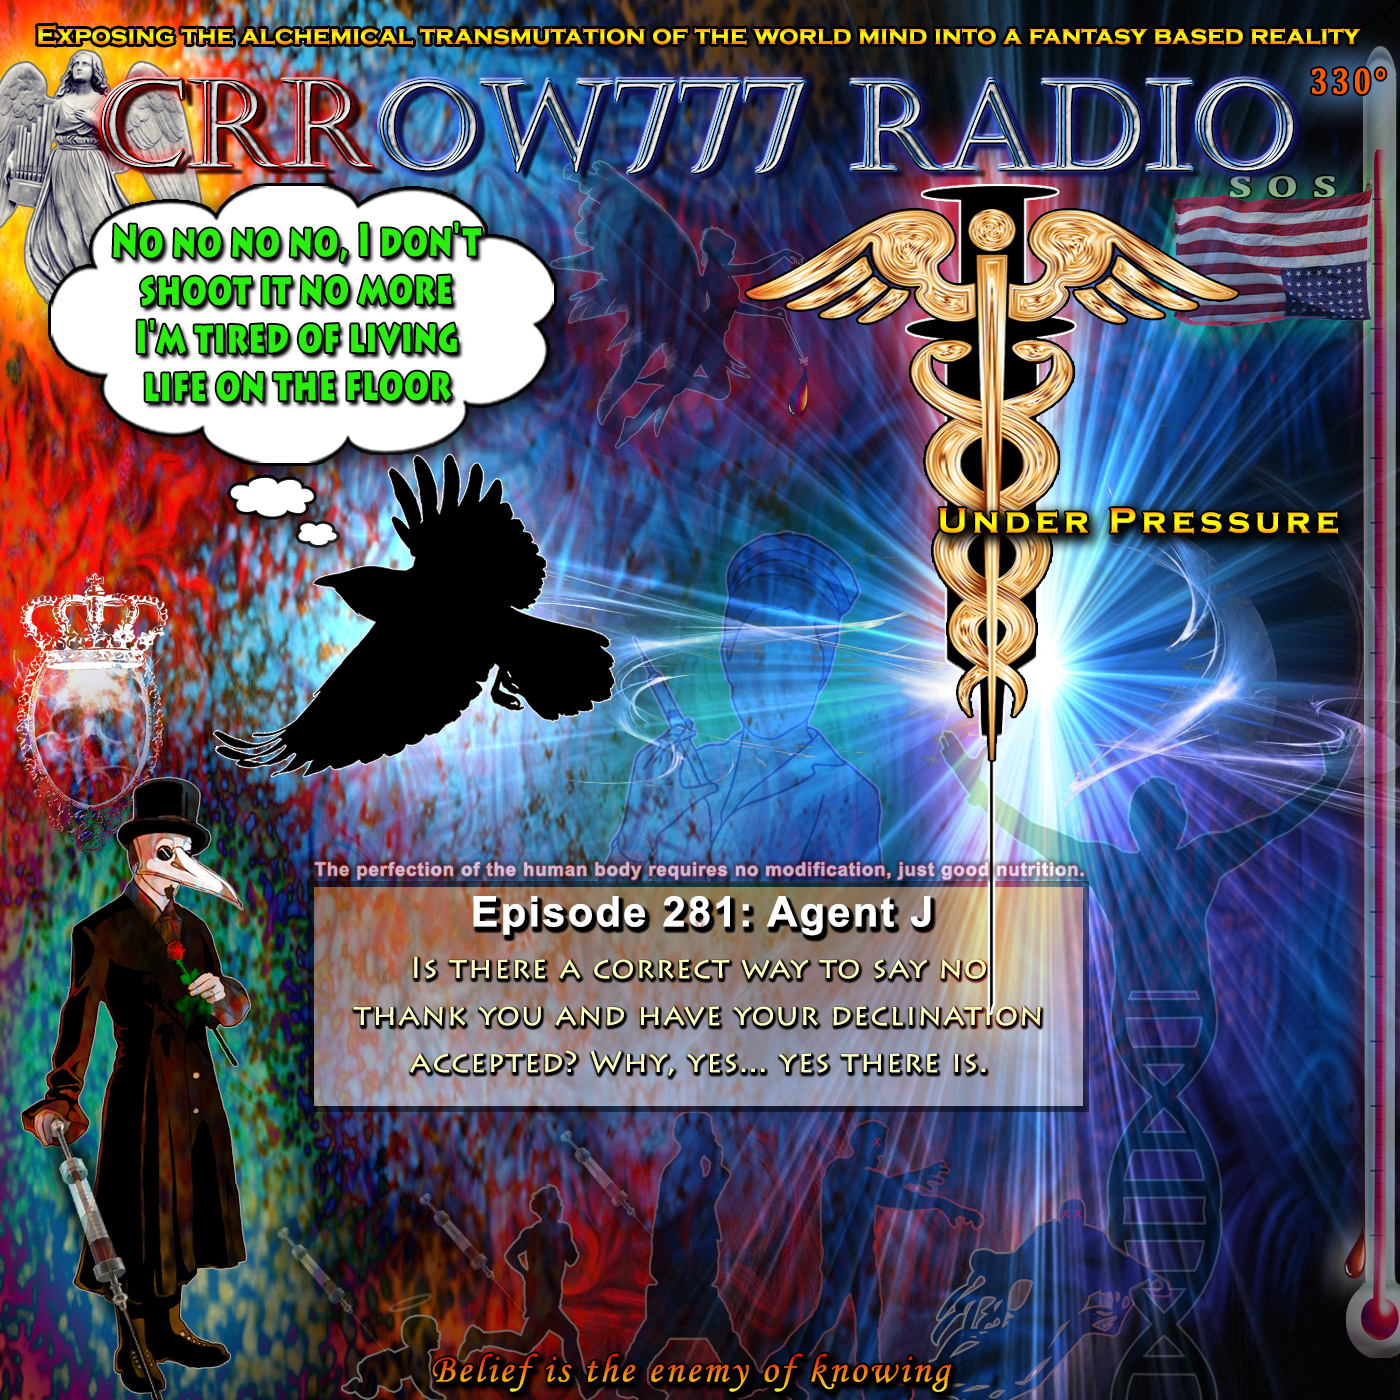 www.crrow777radio.com